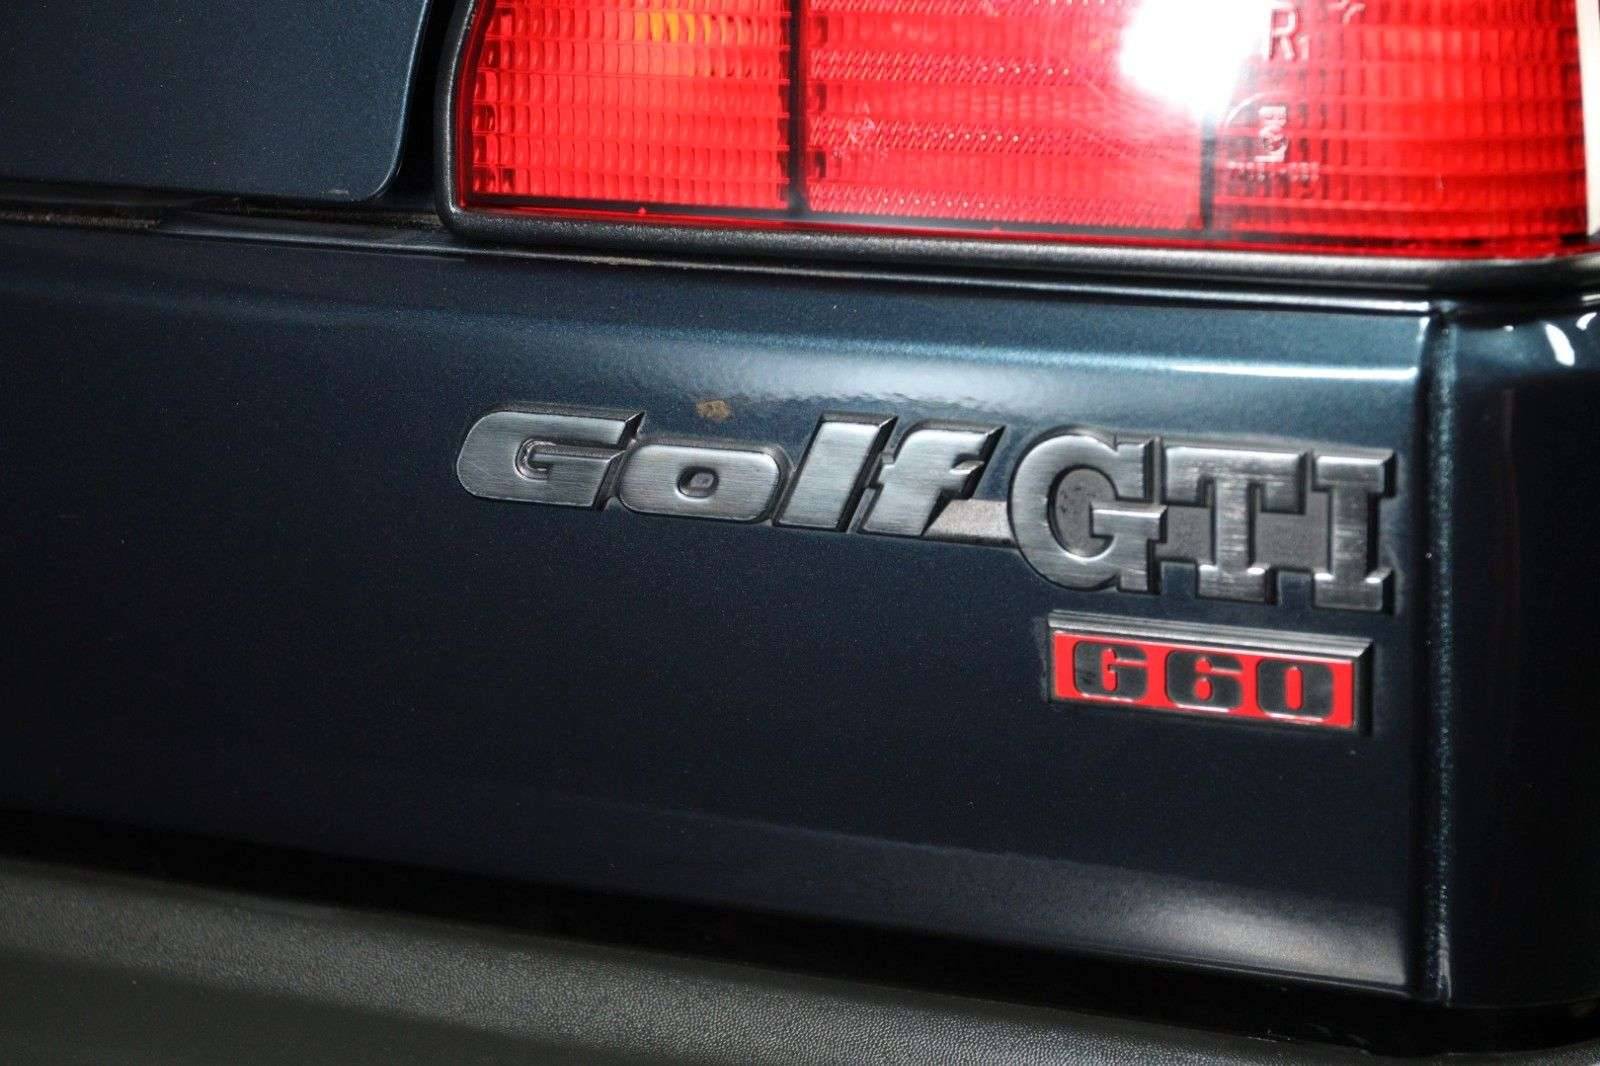 Zu Verkaufen: Volkswagen Golf II GTi G60 1.8 (1990) angeboten für 33.900 €